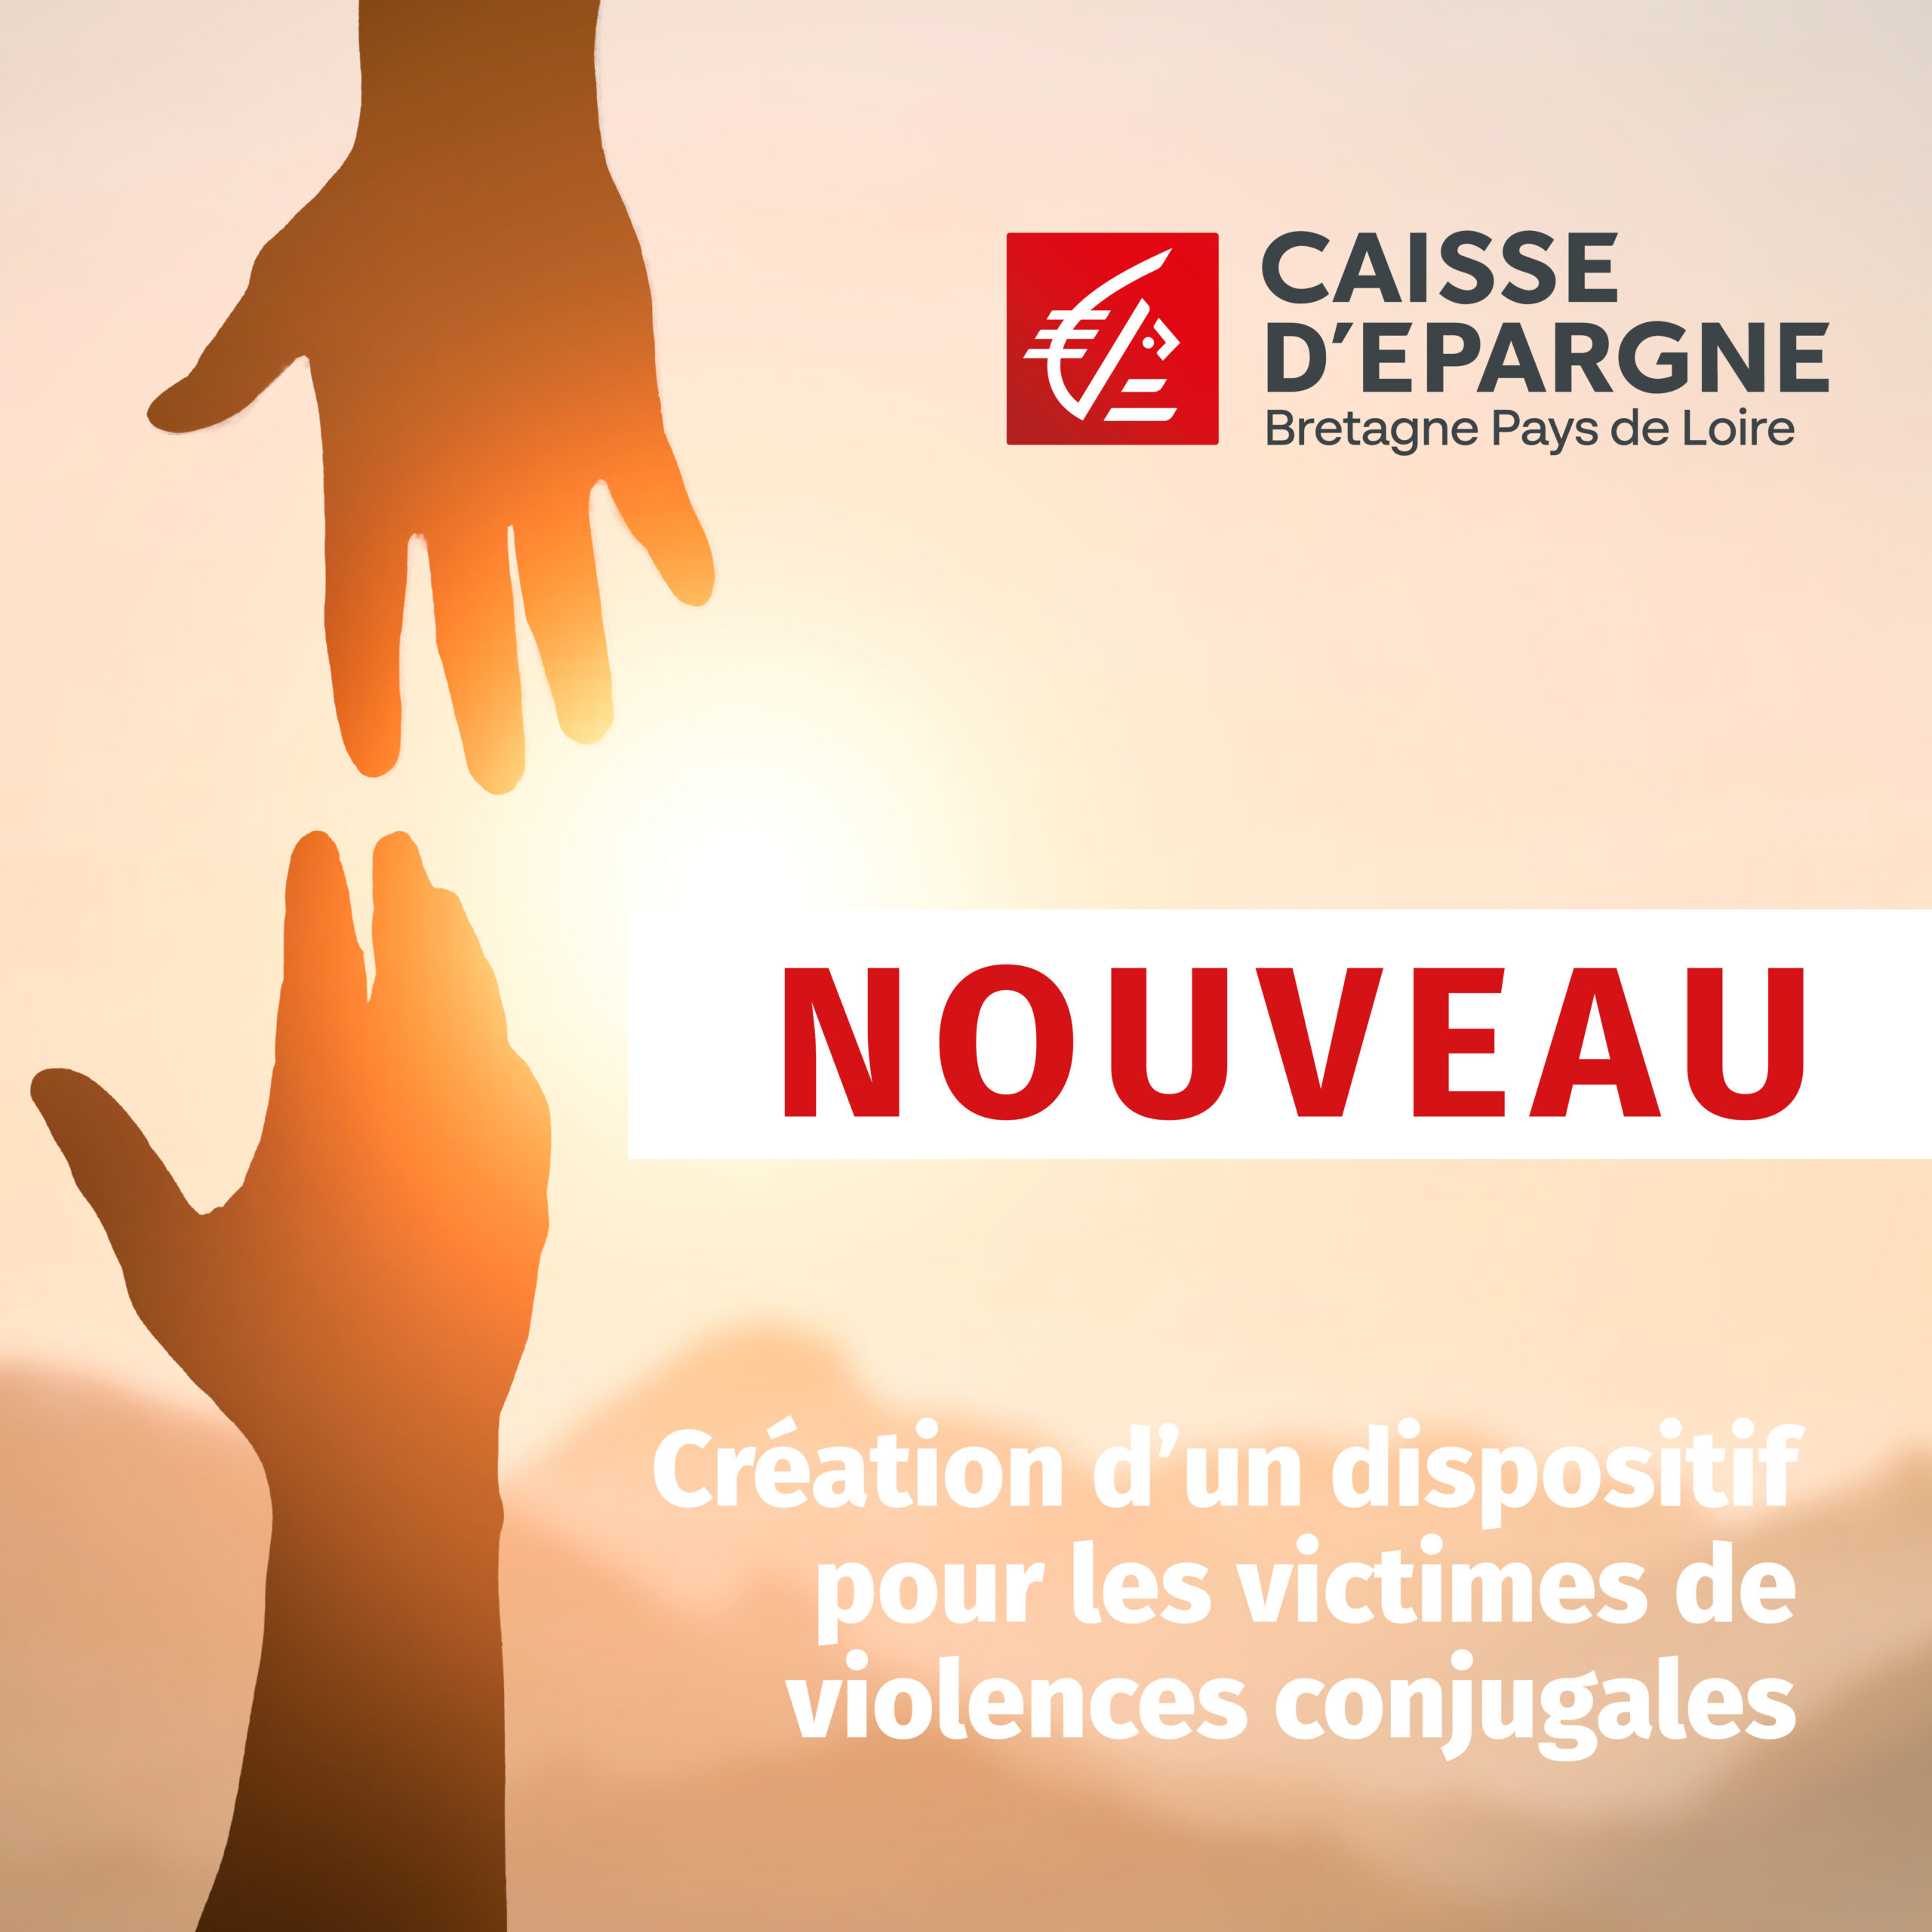 La Caisse d’Epargne Bretagne Pays de Loire crée une solution d’ouverture de compte pour les victimes de violences conjugales